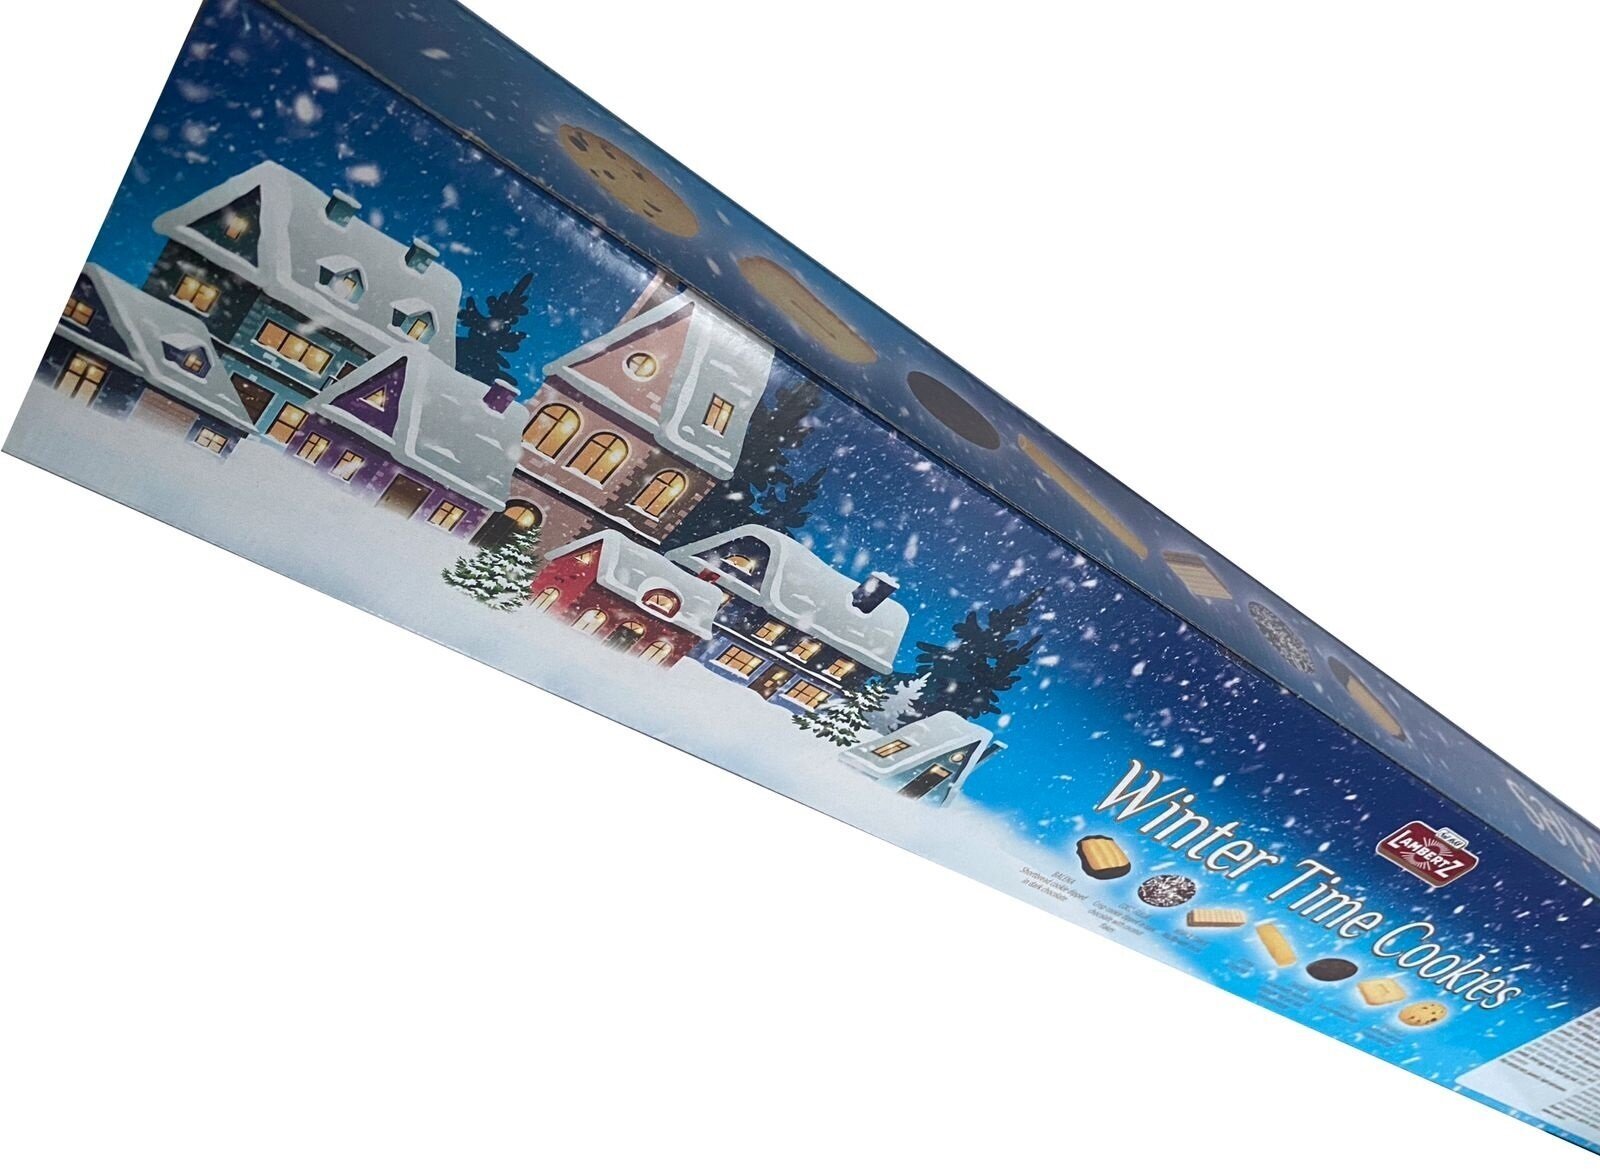 Гигантская коробка печенья, коробка новогоднего печенья и вафель LAMBERTZ Classic European cookies, Германия, 800 г, сладкий новогодний подарок, печенье длиную один метр ассорти, набор кондитерских изделий, сладкие подарки на новый год